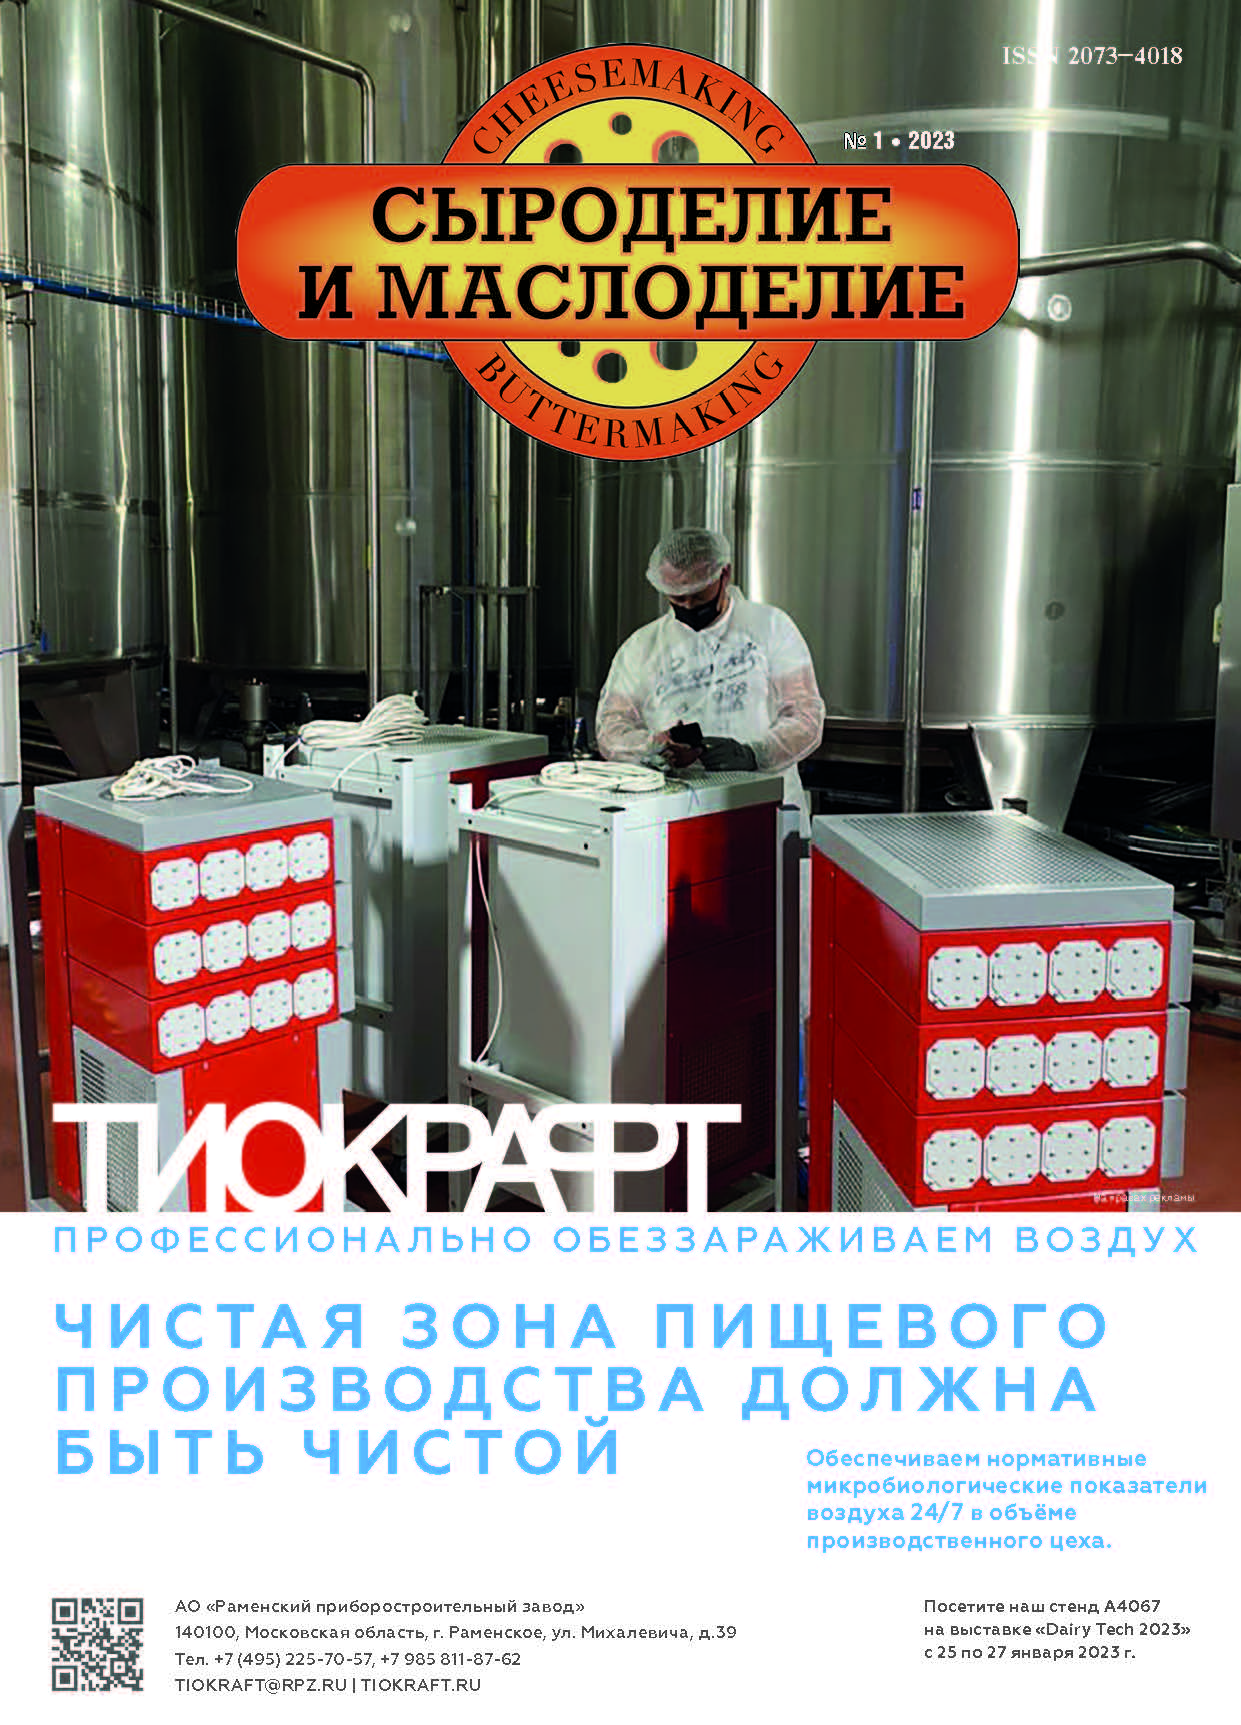             Ценовая конъюнктура на российском рынке сливочного масла и сыров в 2022 г.
    